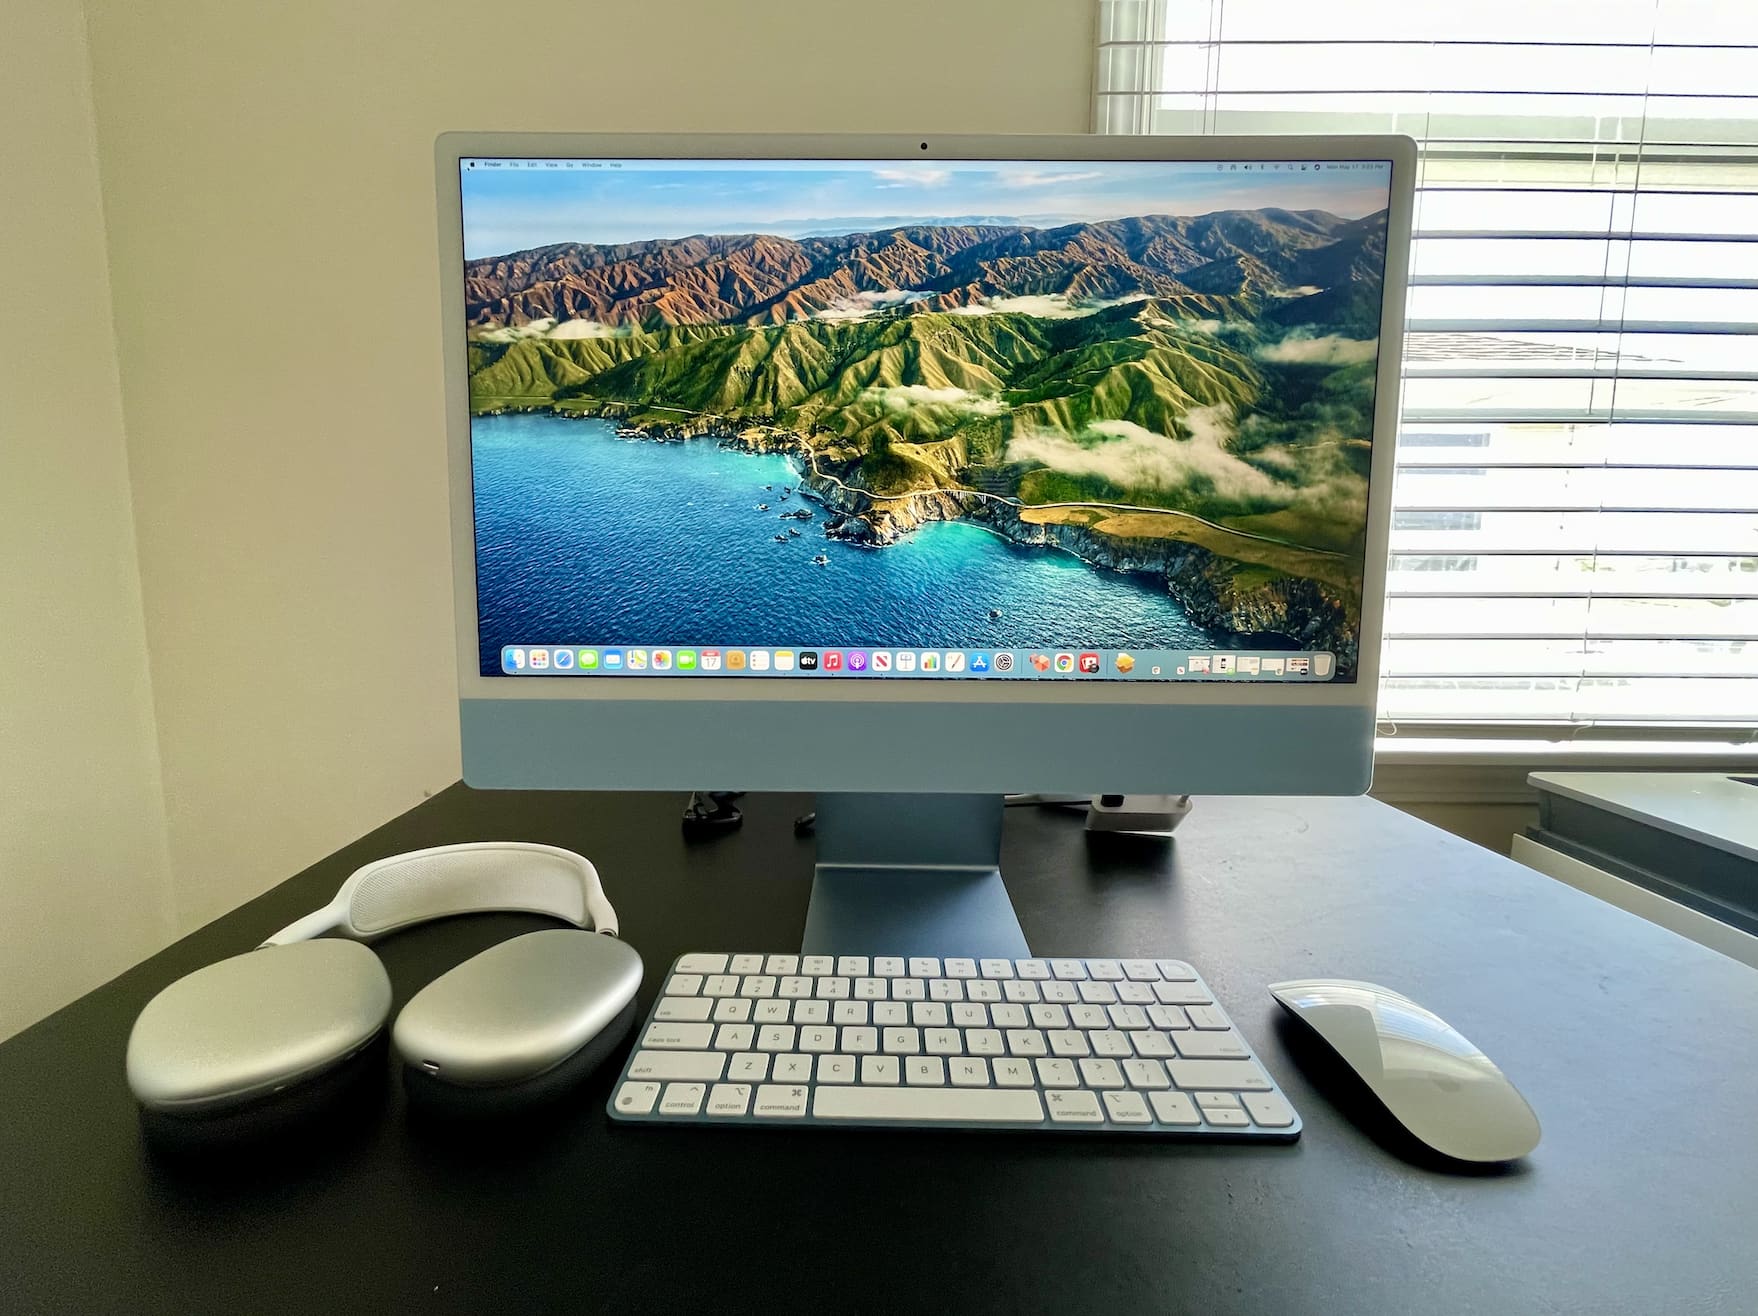 Do iMacs Desktop Computers Have Fans? 3